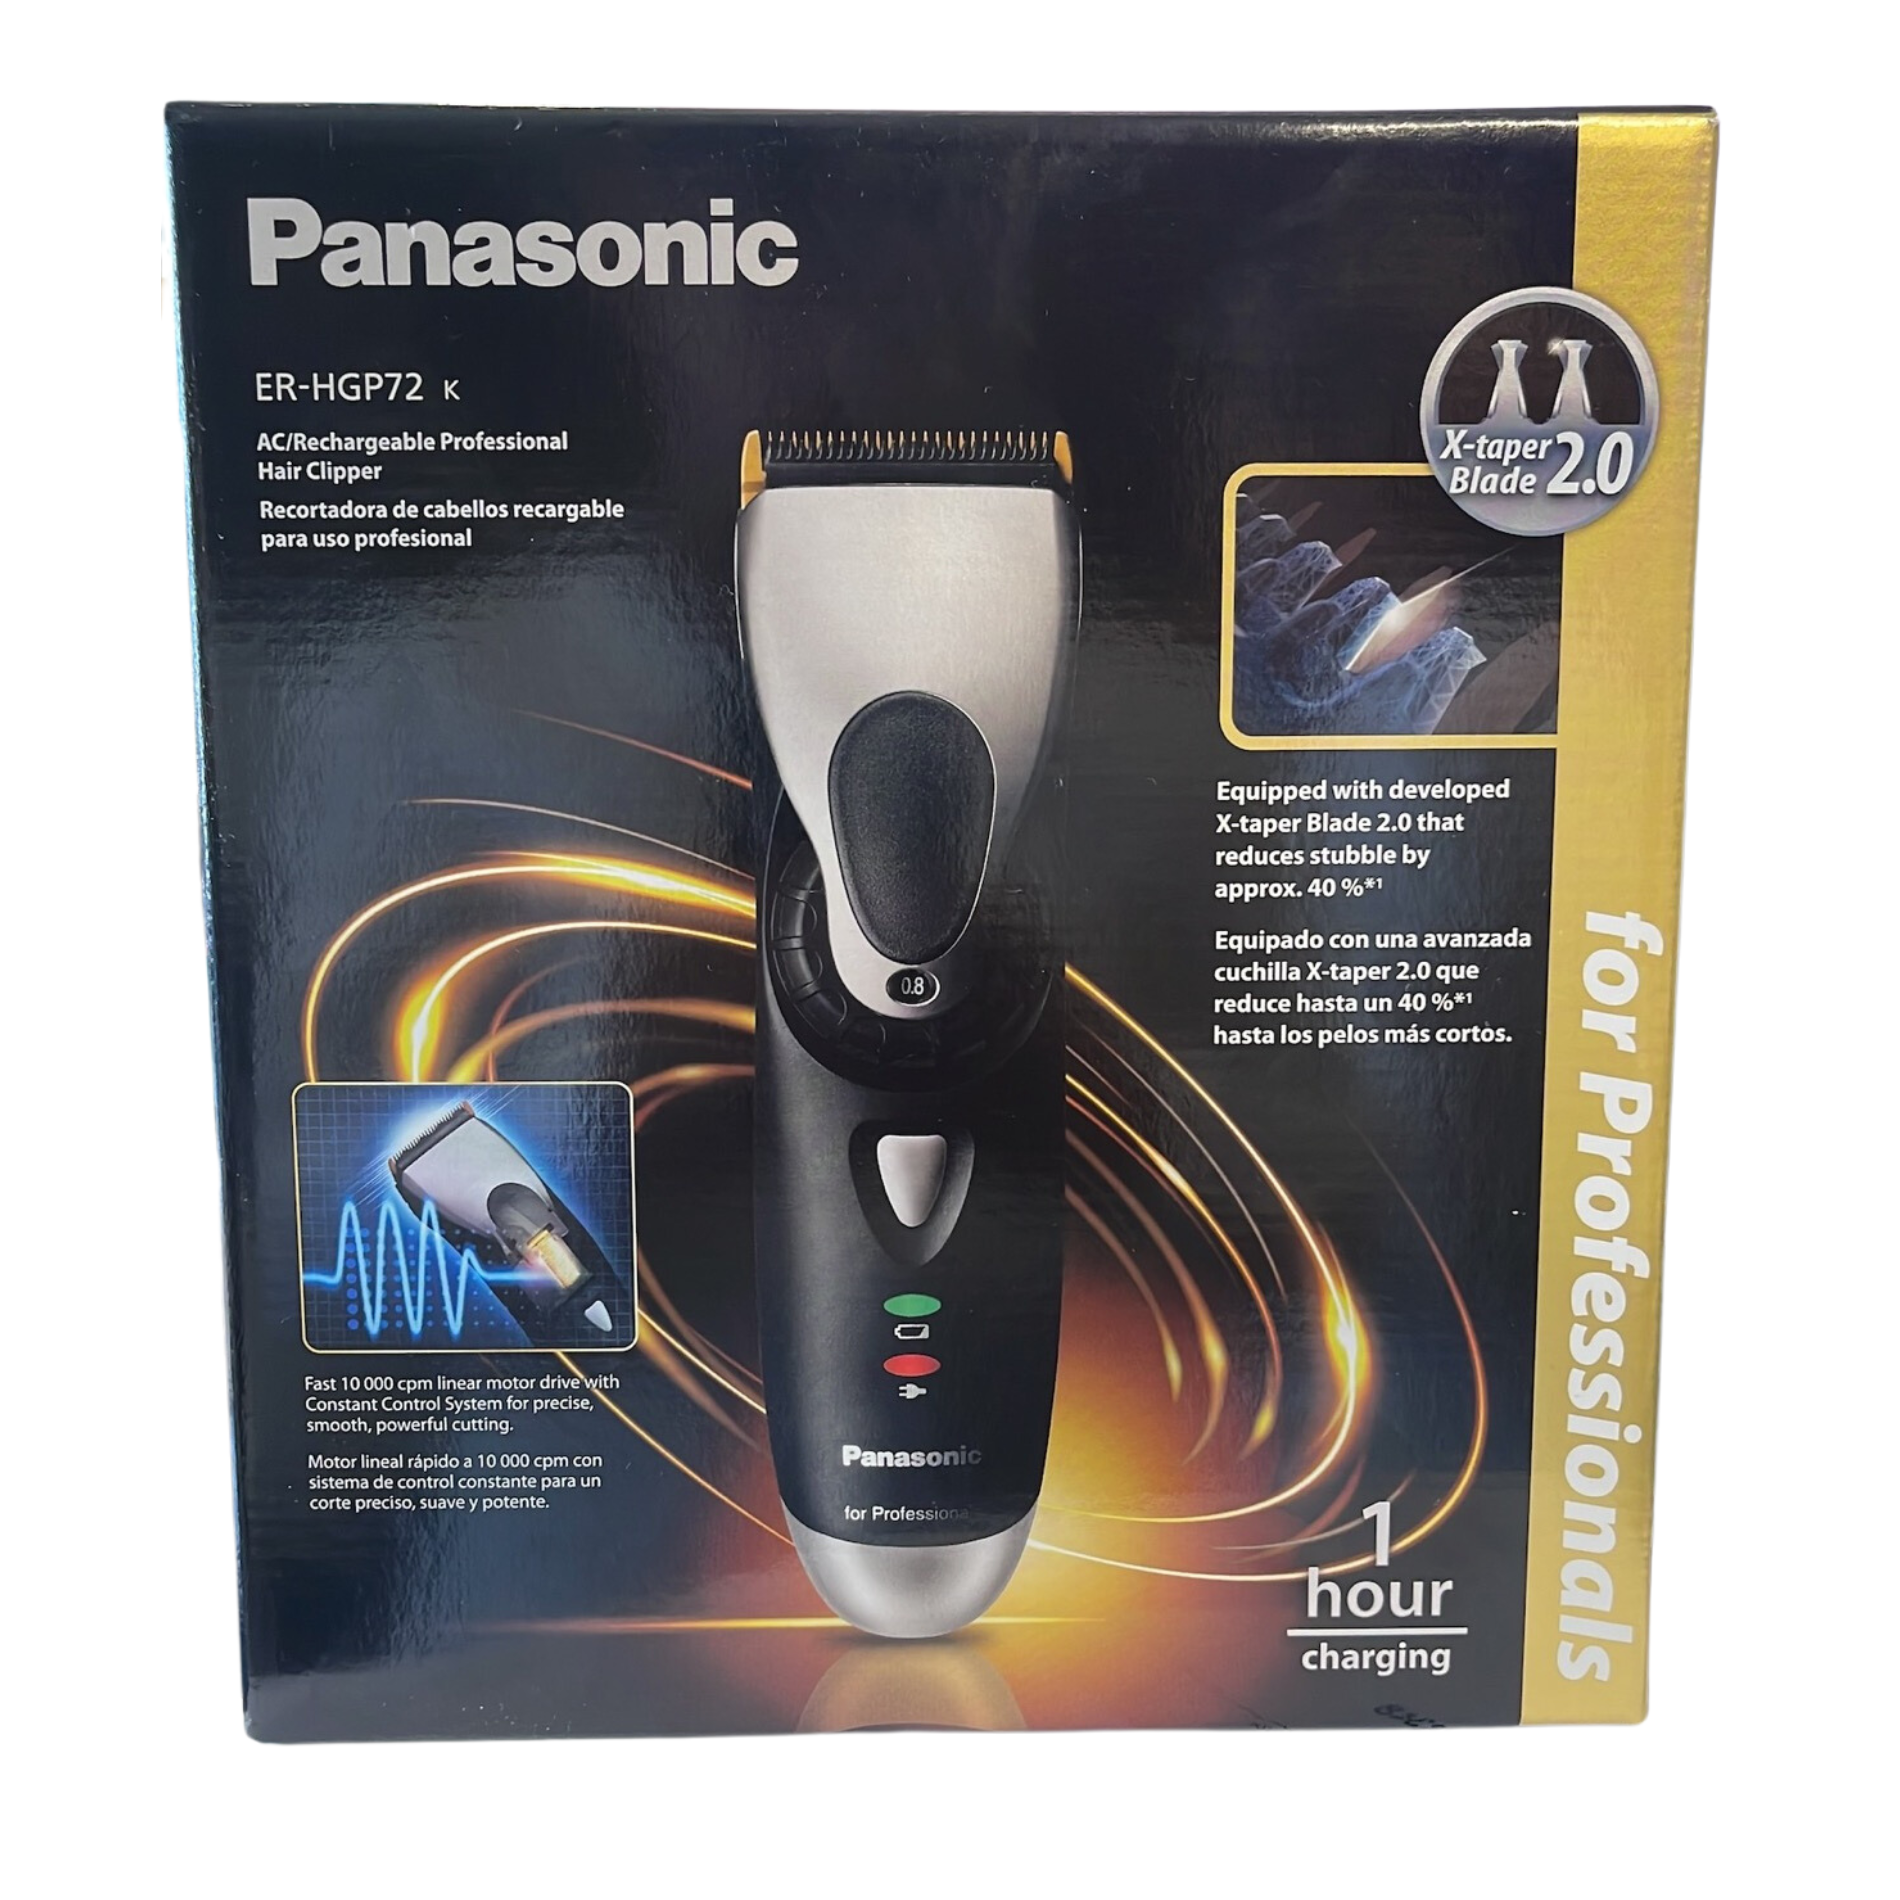 Panasonic Tagliacapelli Pro ricaricabile Er-hgp72